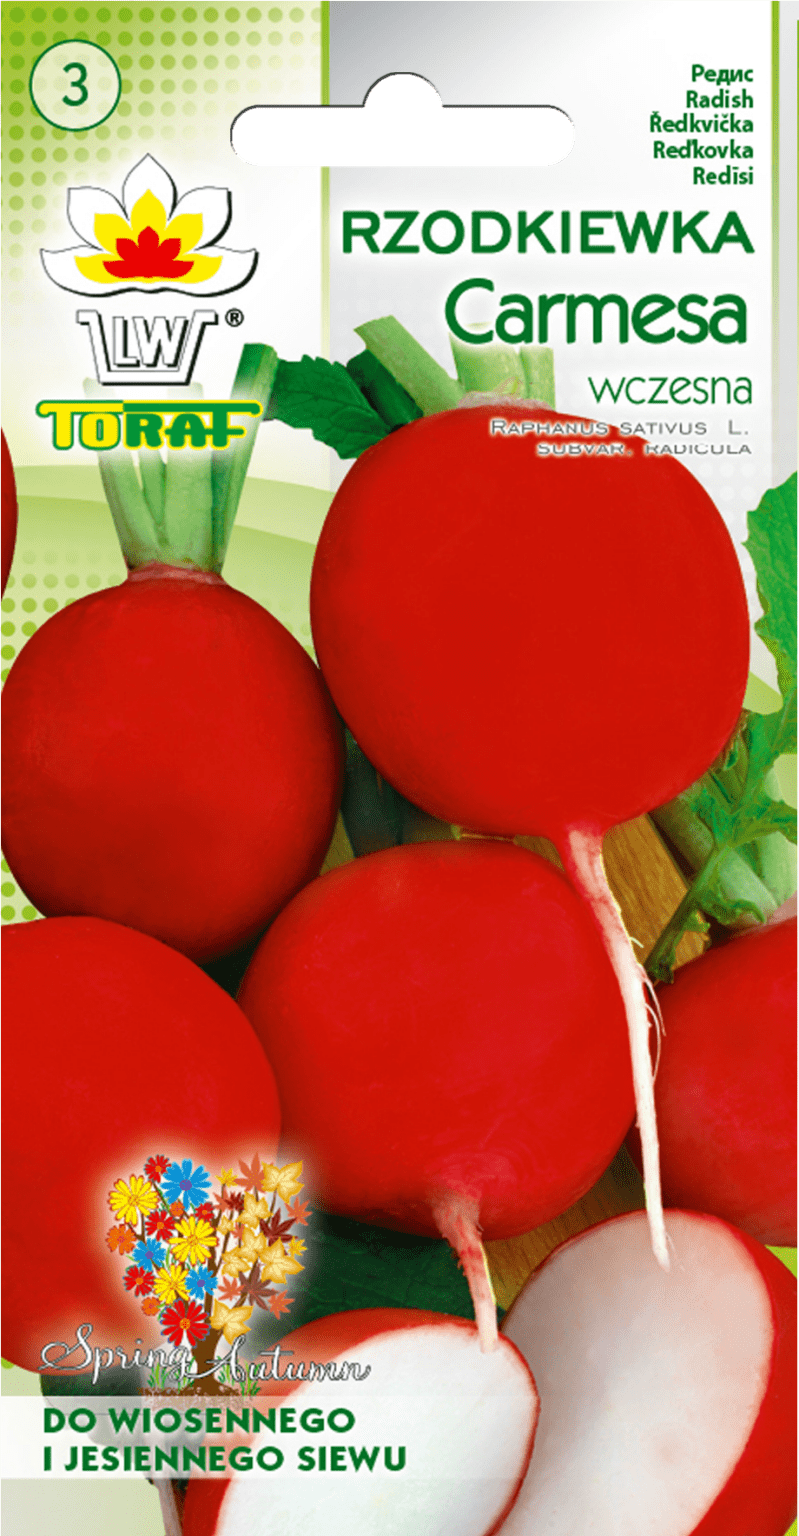 Rzodkiewka Carmesa (czerwona) - wczesna 10g TORAF